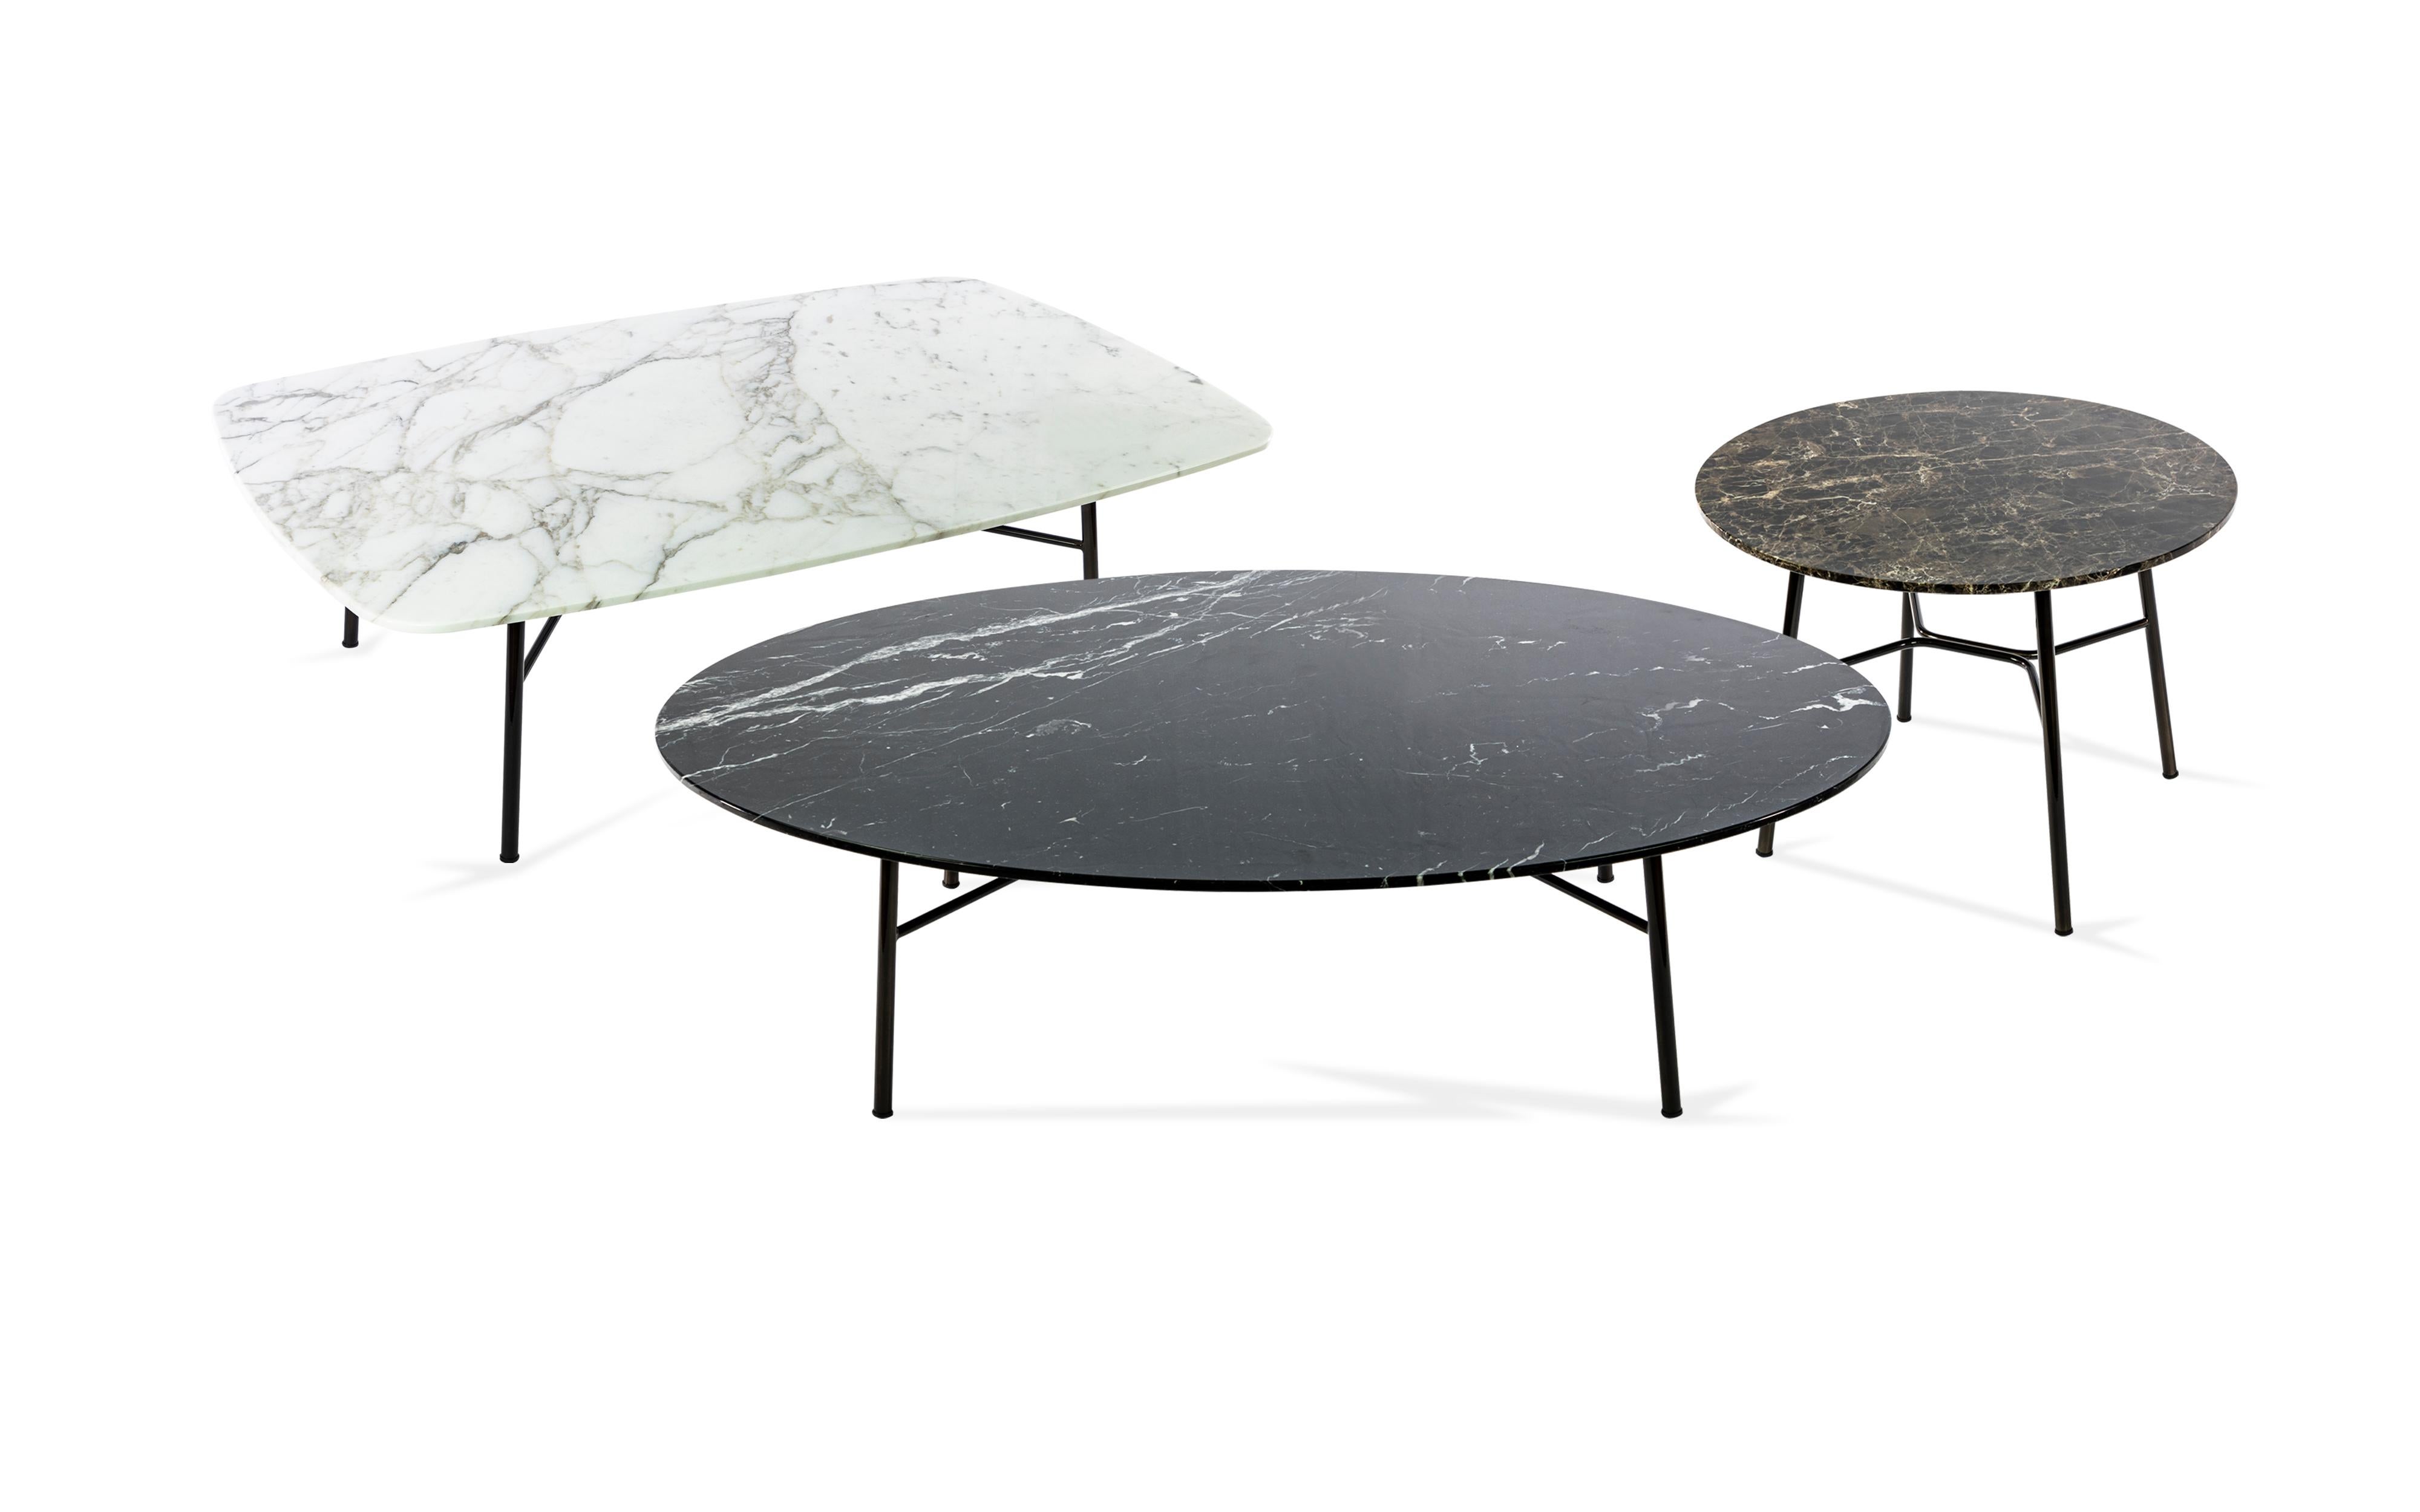 Moderne Petite table Yuki, cadre métallique, rond, couleur noire, design, table basse